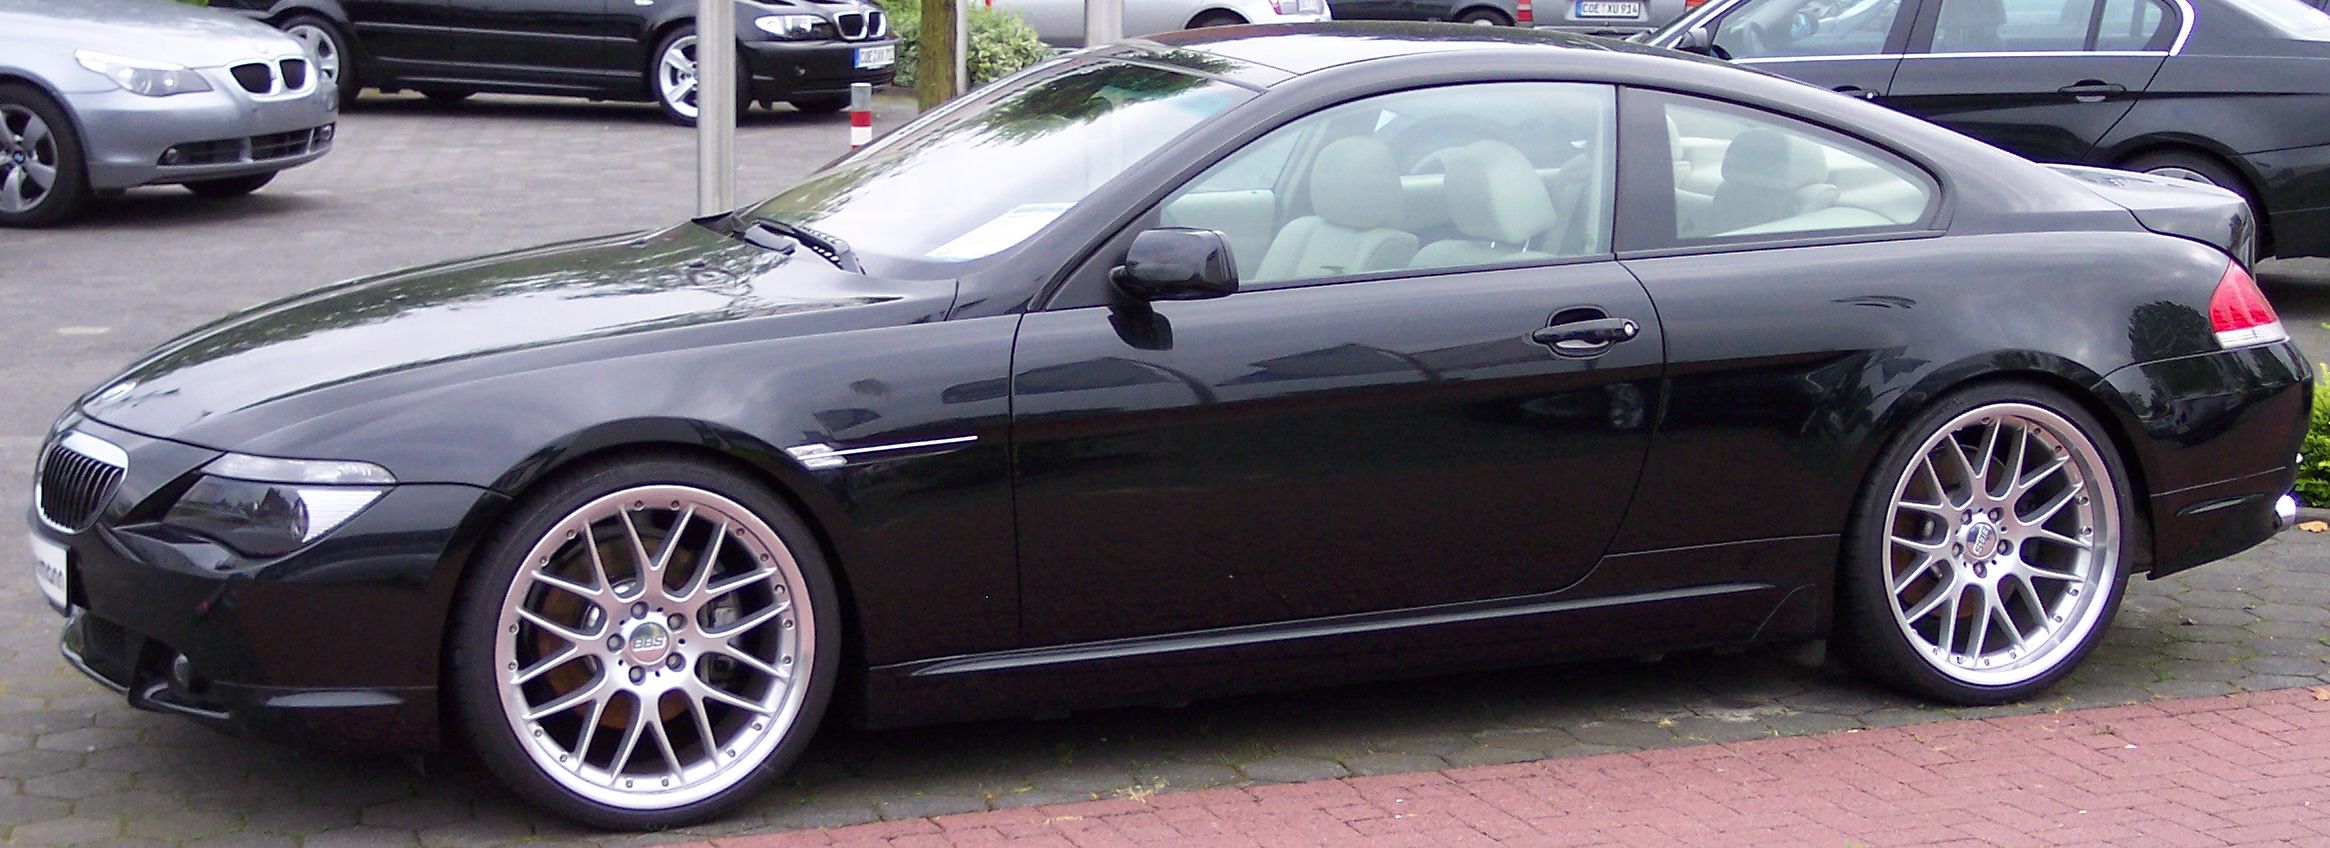 Fichier: BMW Series6 noir l.jpg